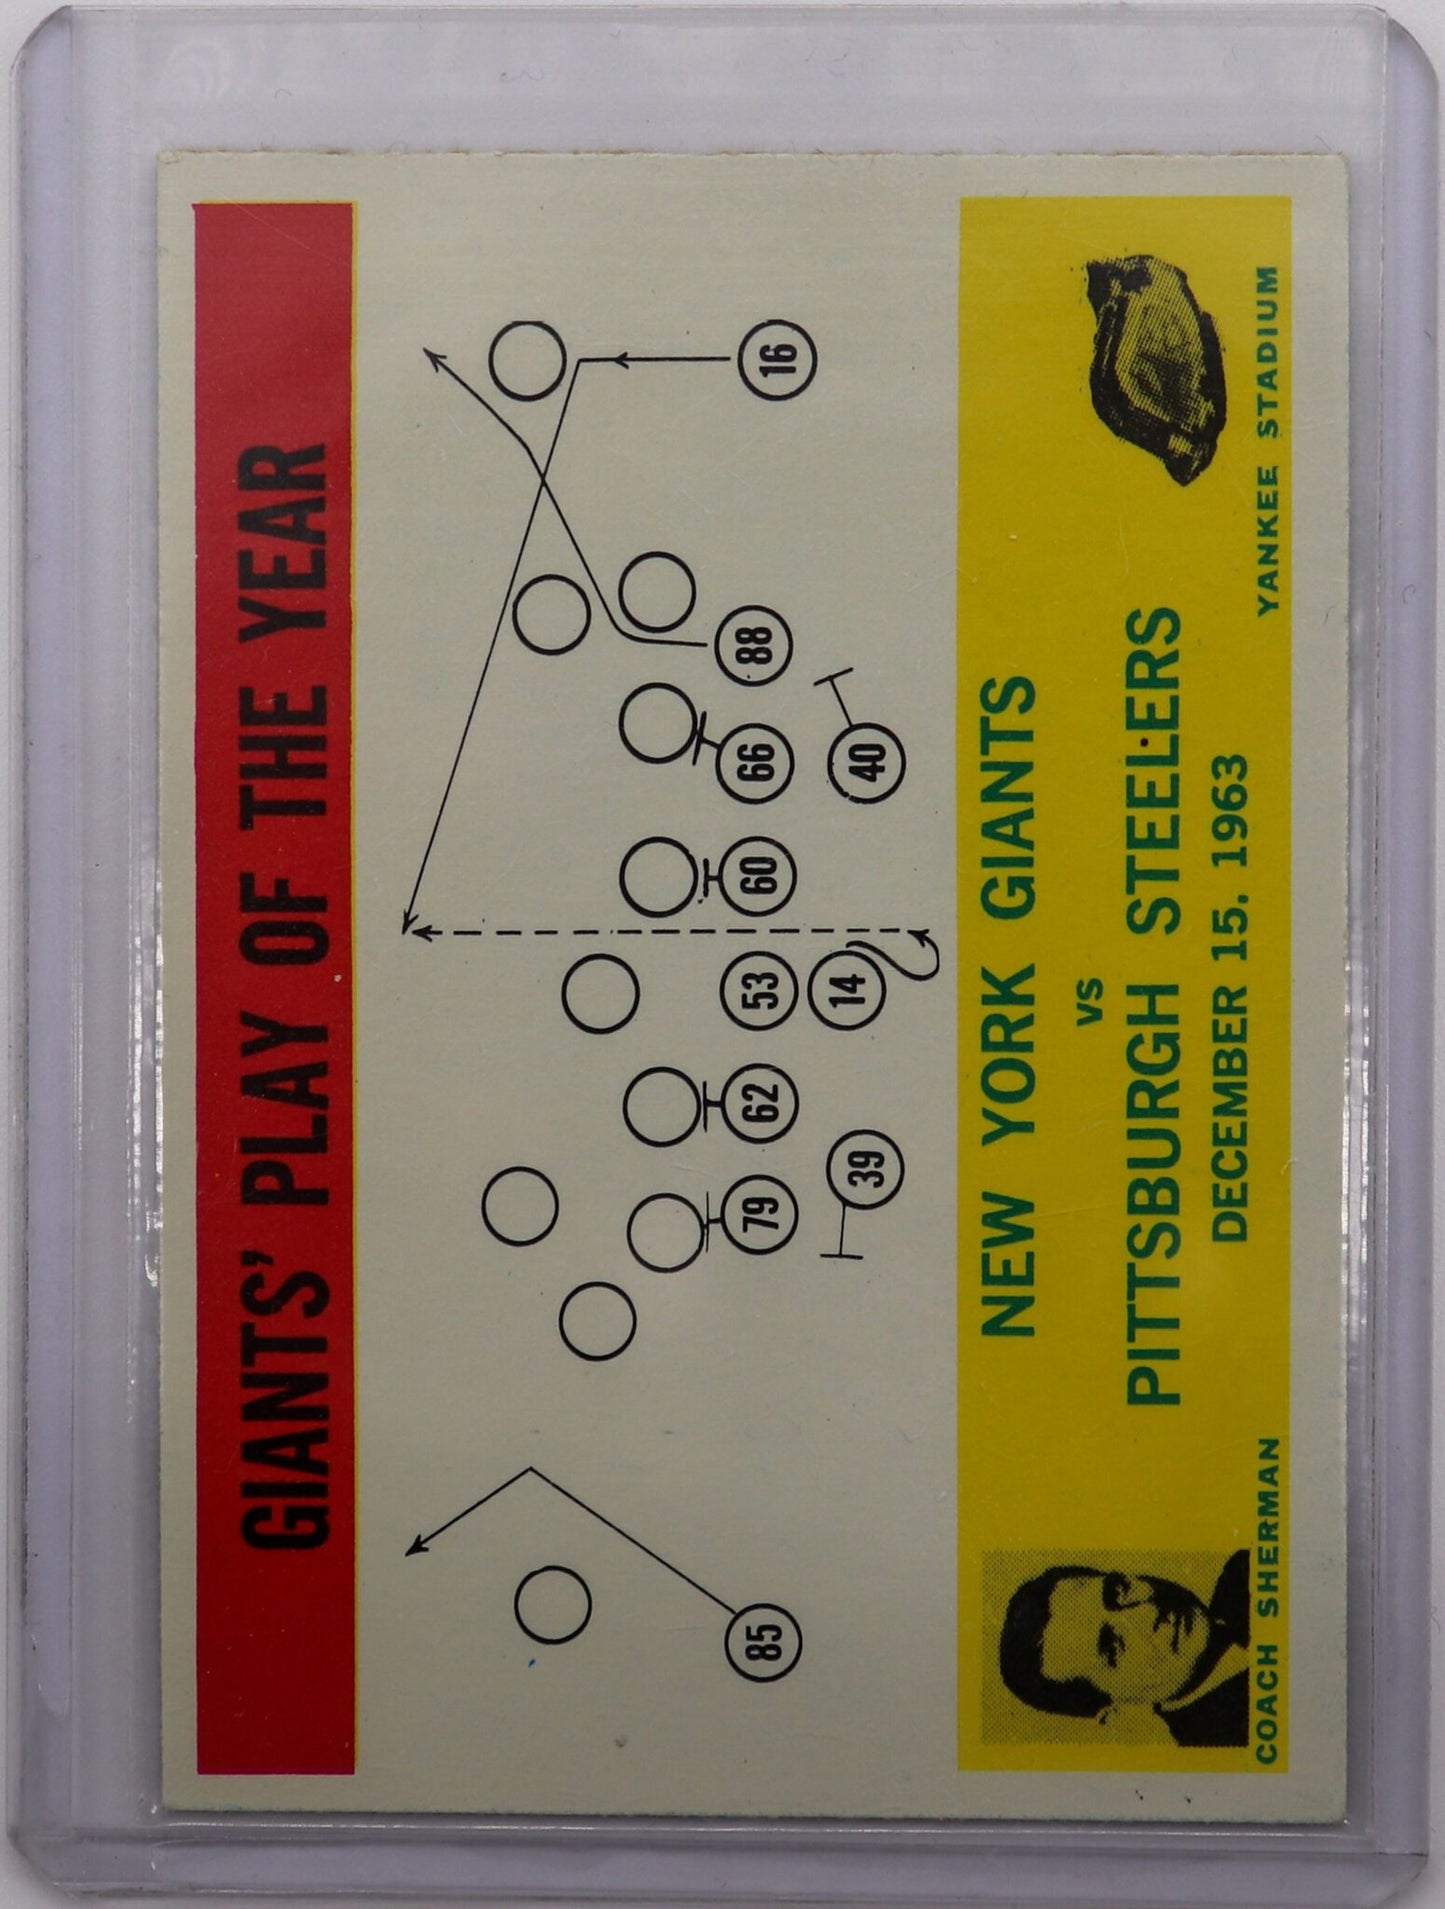 1964 Philadelphia “Giants Play of the Year” Football Card #126, Fair/Good